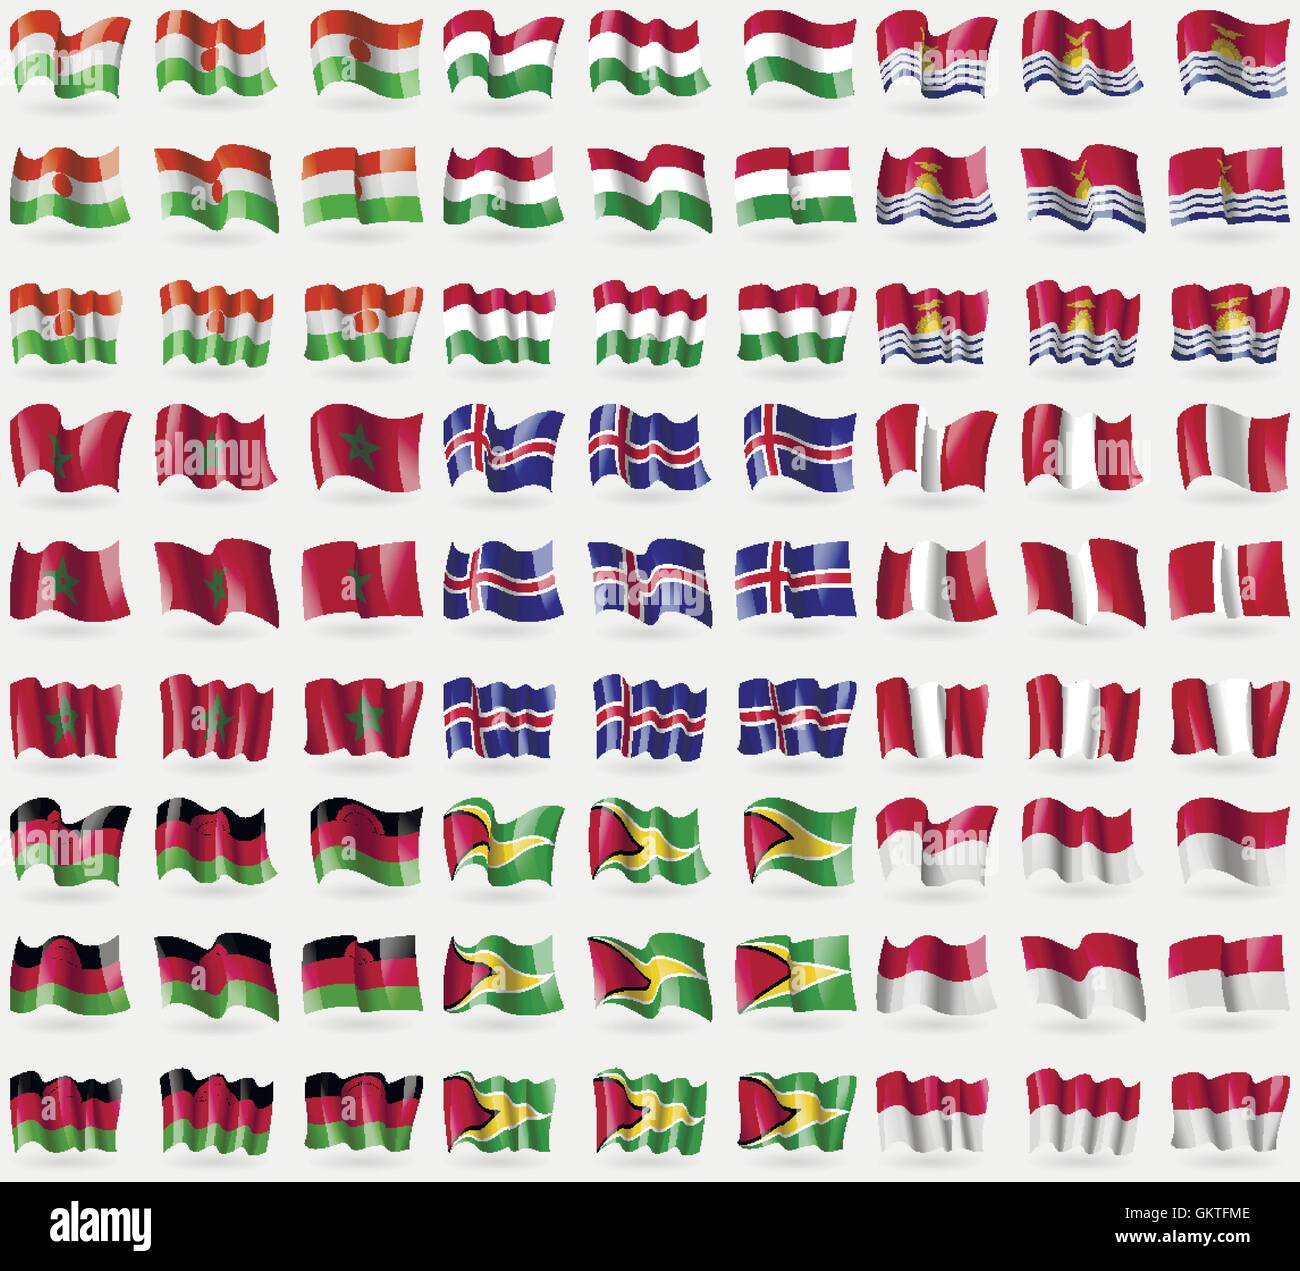 Niger, Ungheria, Kiribati, Marocco, Islanda, Perù, Malawi, Guyana, Indonesia. Grande set di 81 bandiere. Vettore Illustrazione Vettoriale